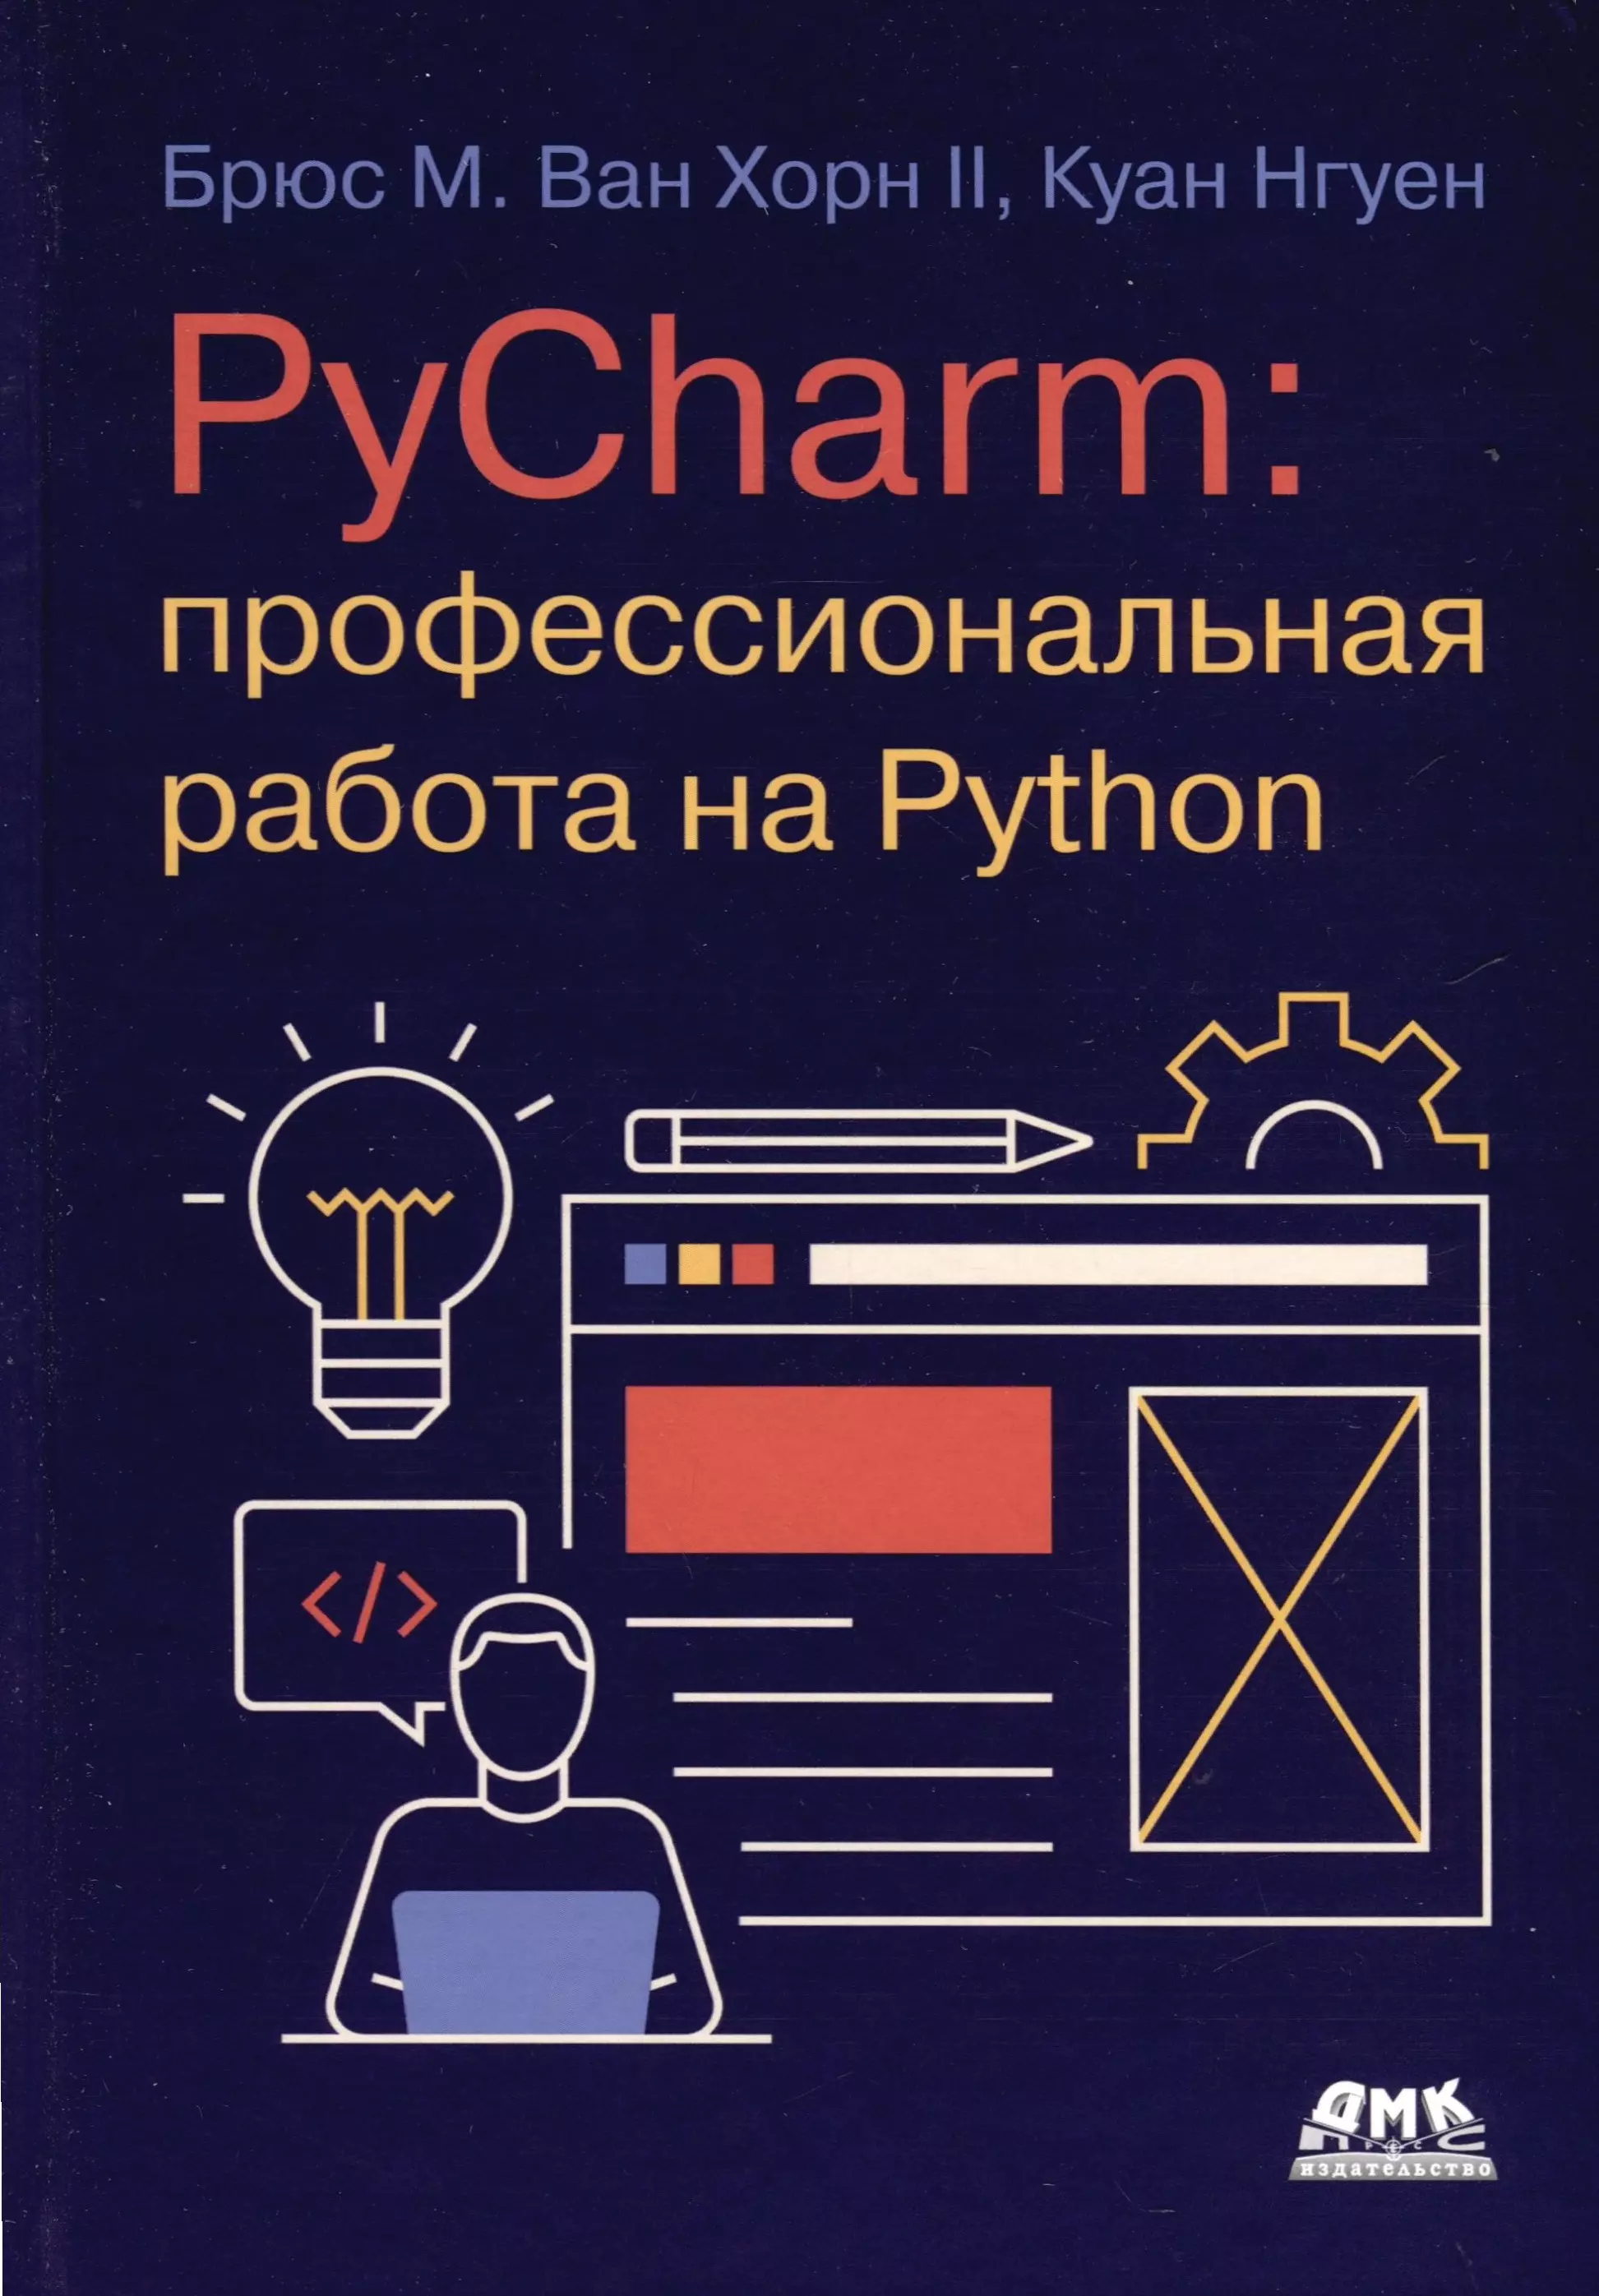 Нгуен Куан PYCHARM: профессиональная работа на PYTHON постолит а python django и pycharm для начинающих